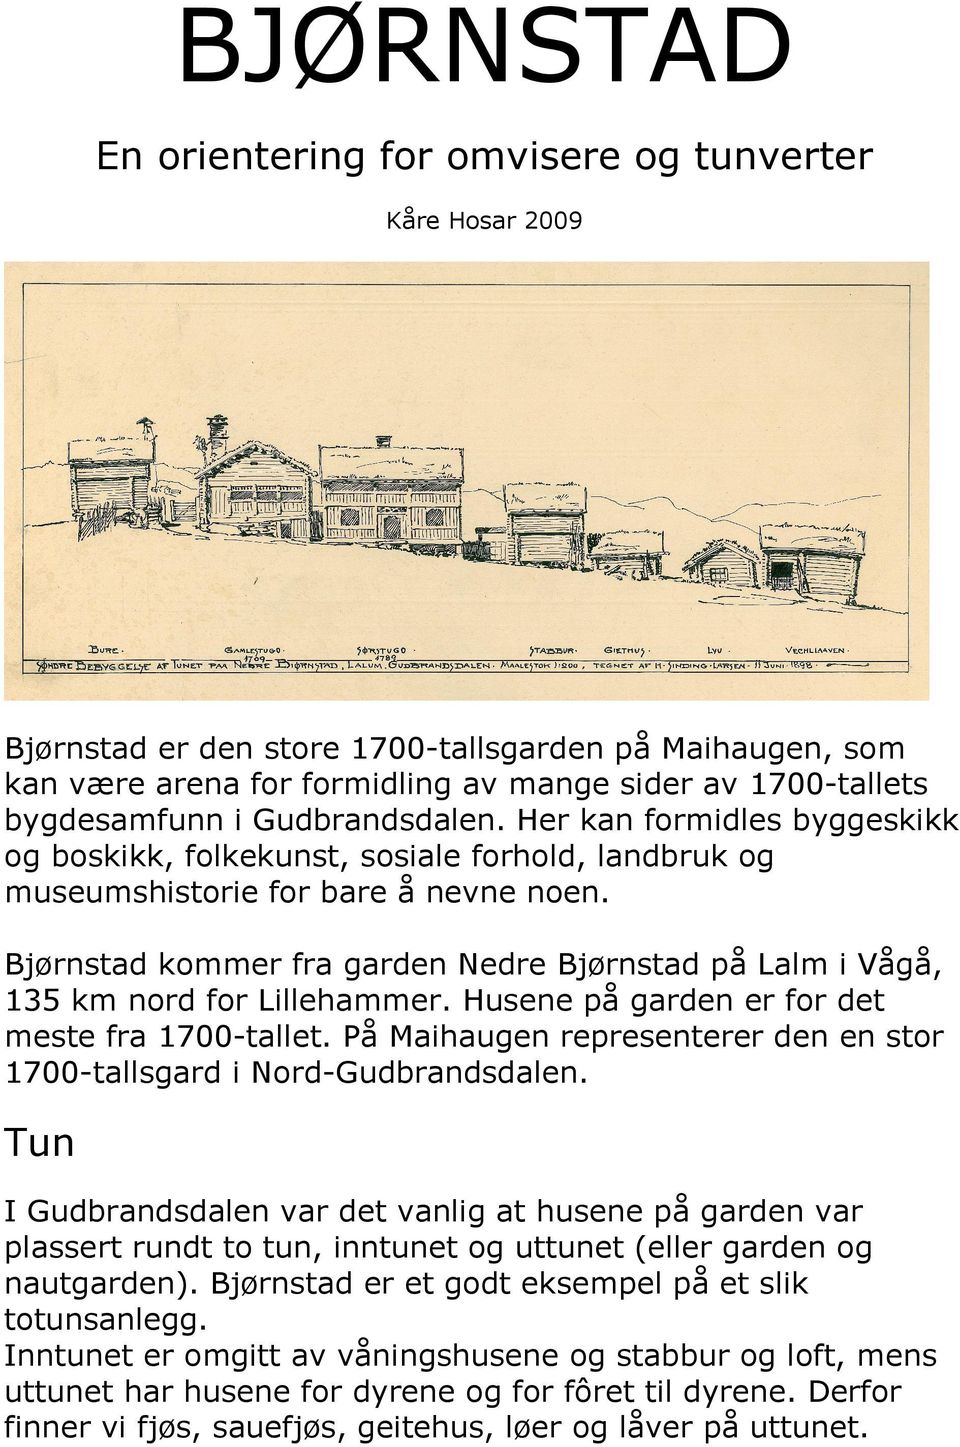 Bjørnstad kommer fra garden Nedre Bjørnstad på Lalm i Vågå, 135 km nord for Lillehammer. Husene på garden er for det meste fra 1700-tallet.